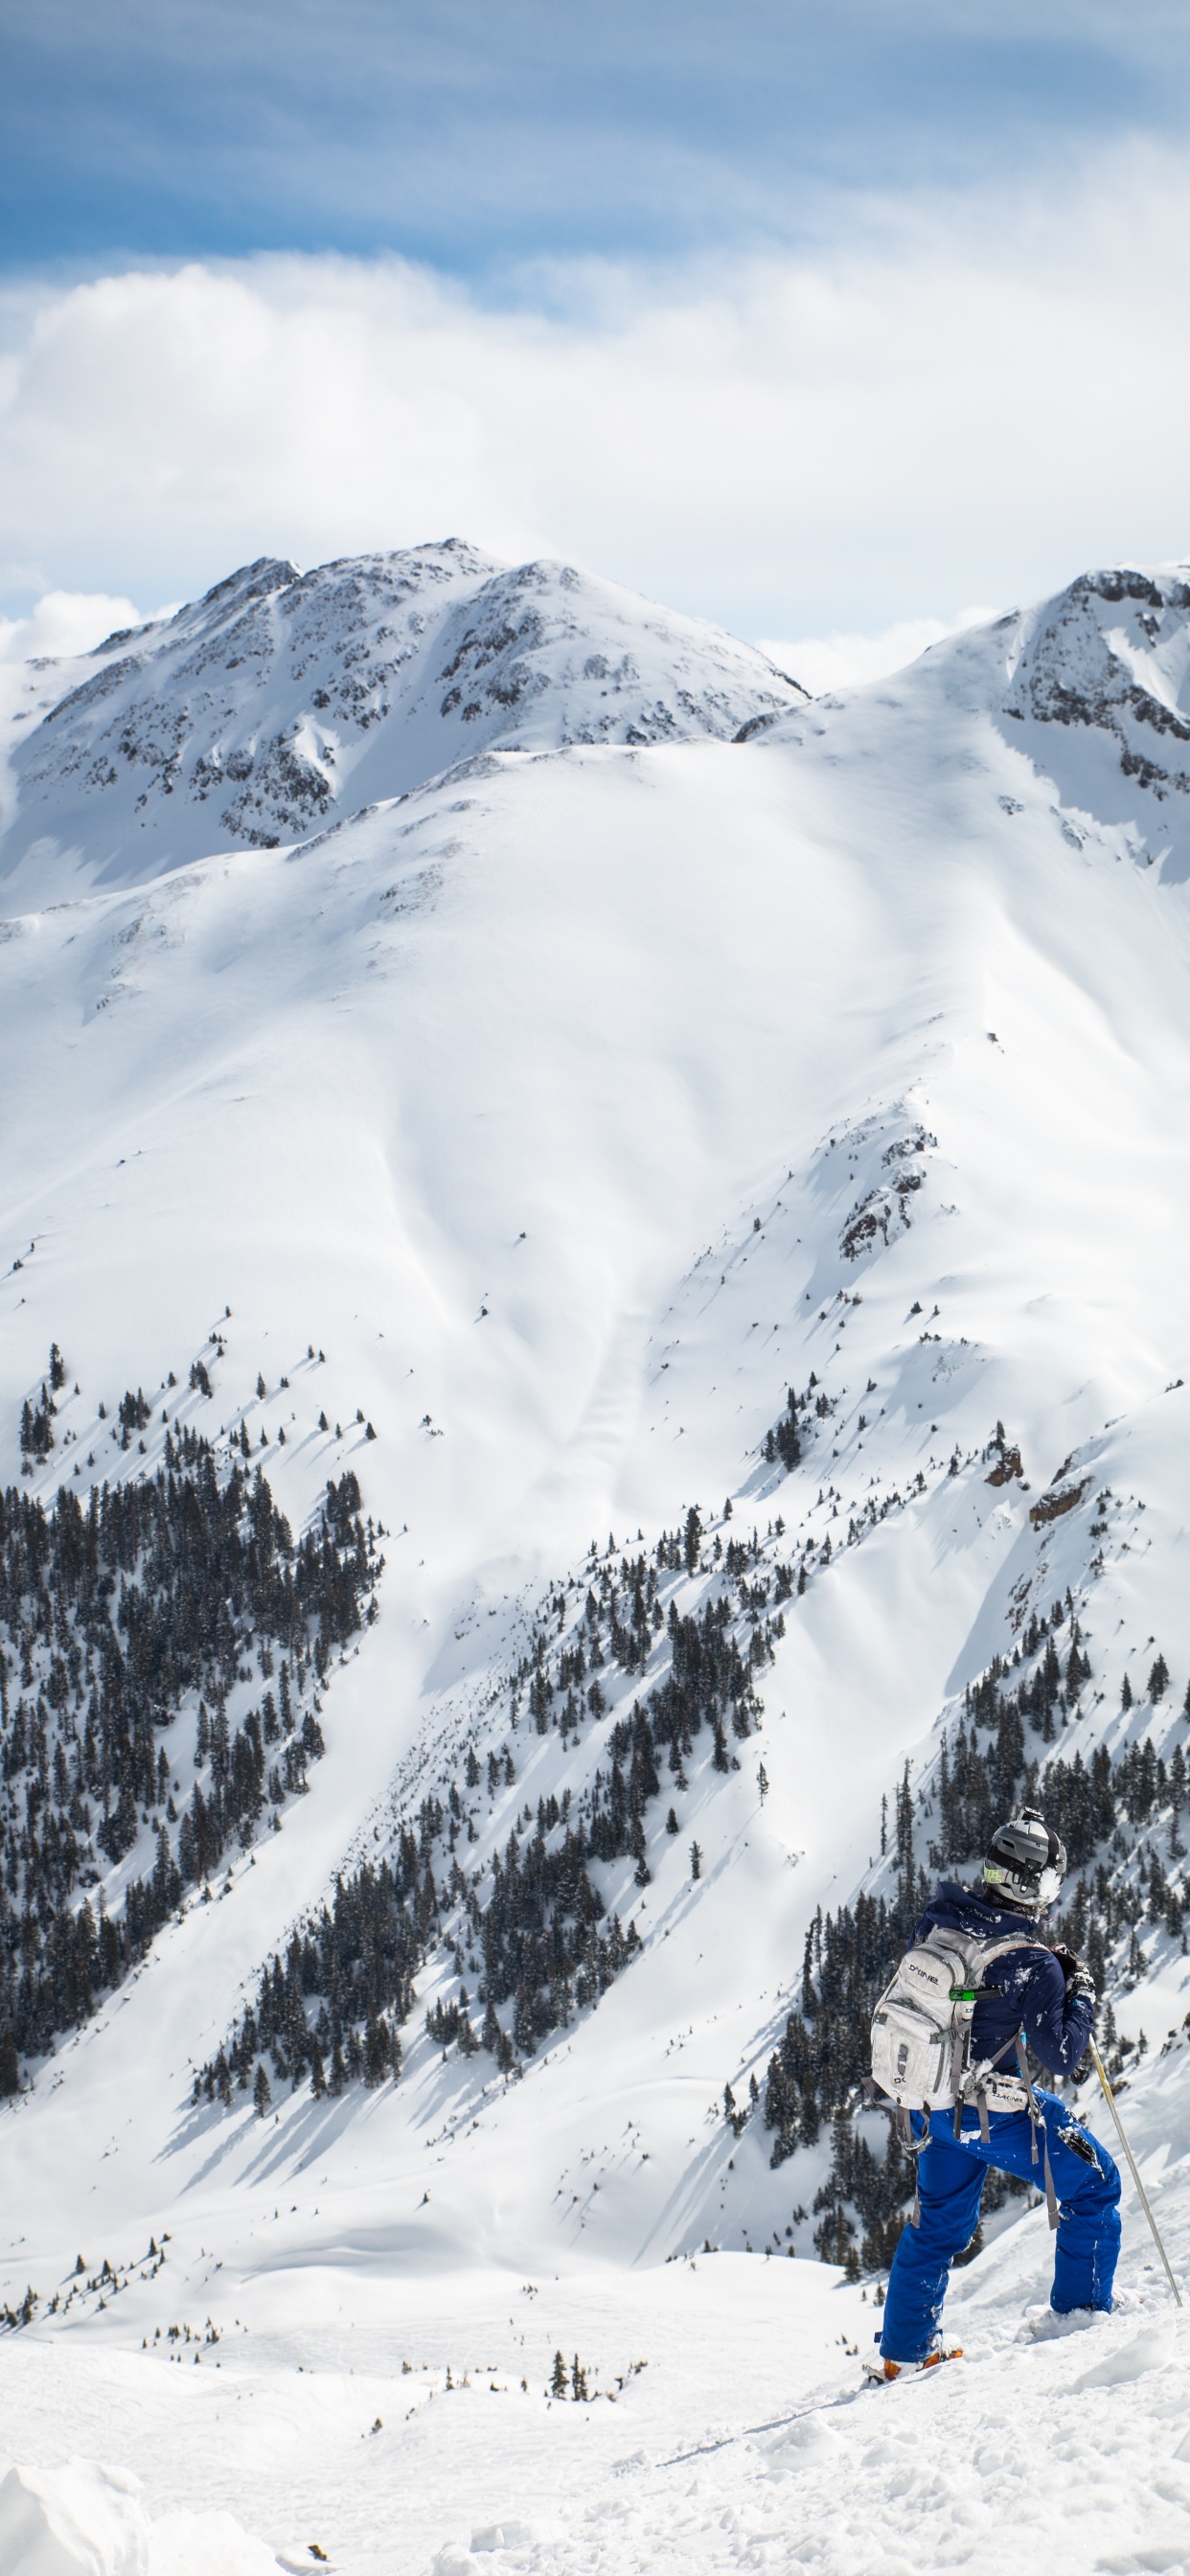 Personne à Cheval Sur le Ski de Neige Sur la Montagne Couverte de Neige Pendant la Journée. Wallpaper in 1242x2688 Resolution